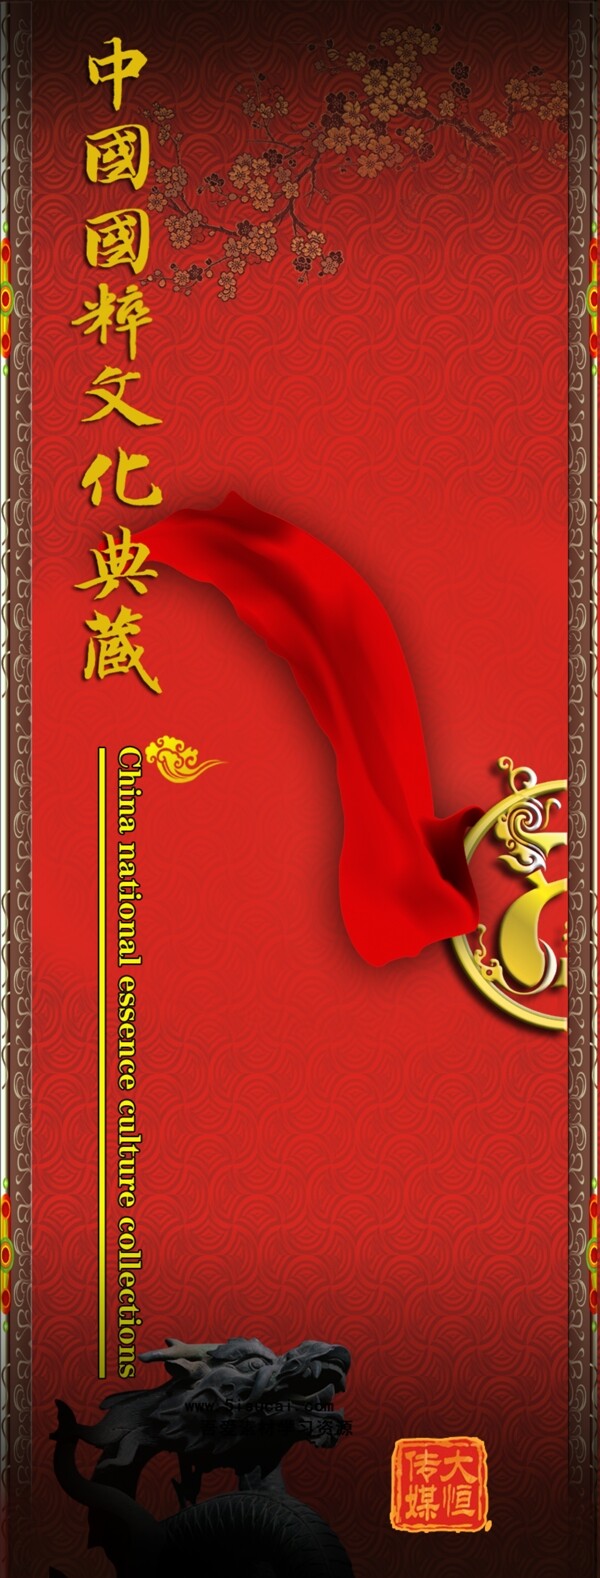 中国国粹典藏封面设计PSD模板